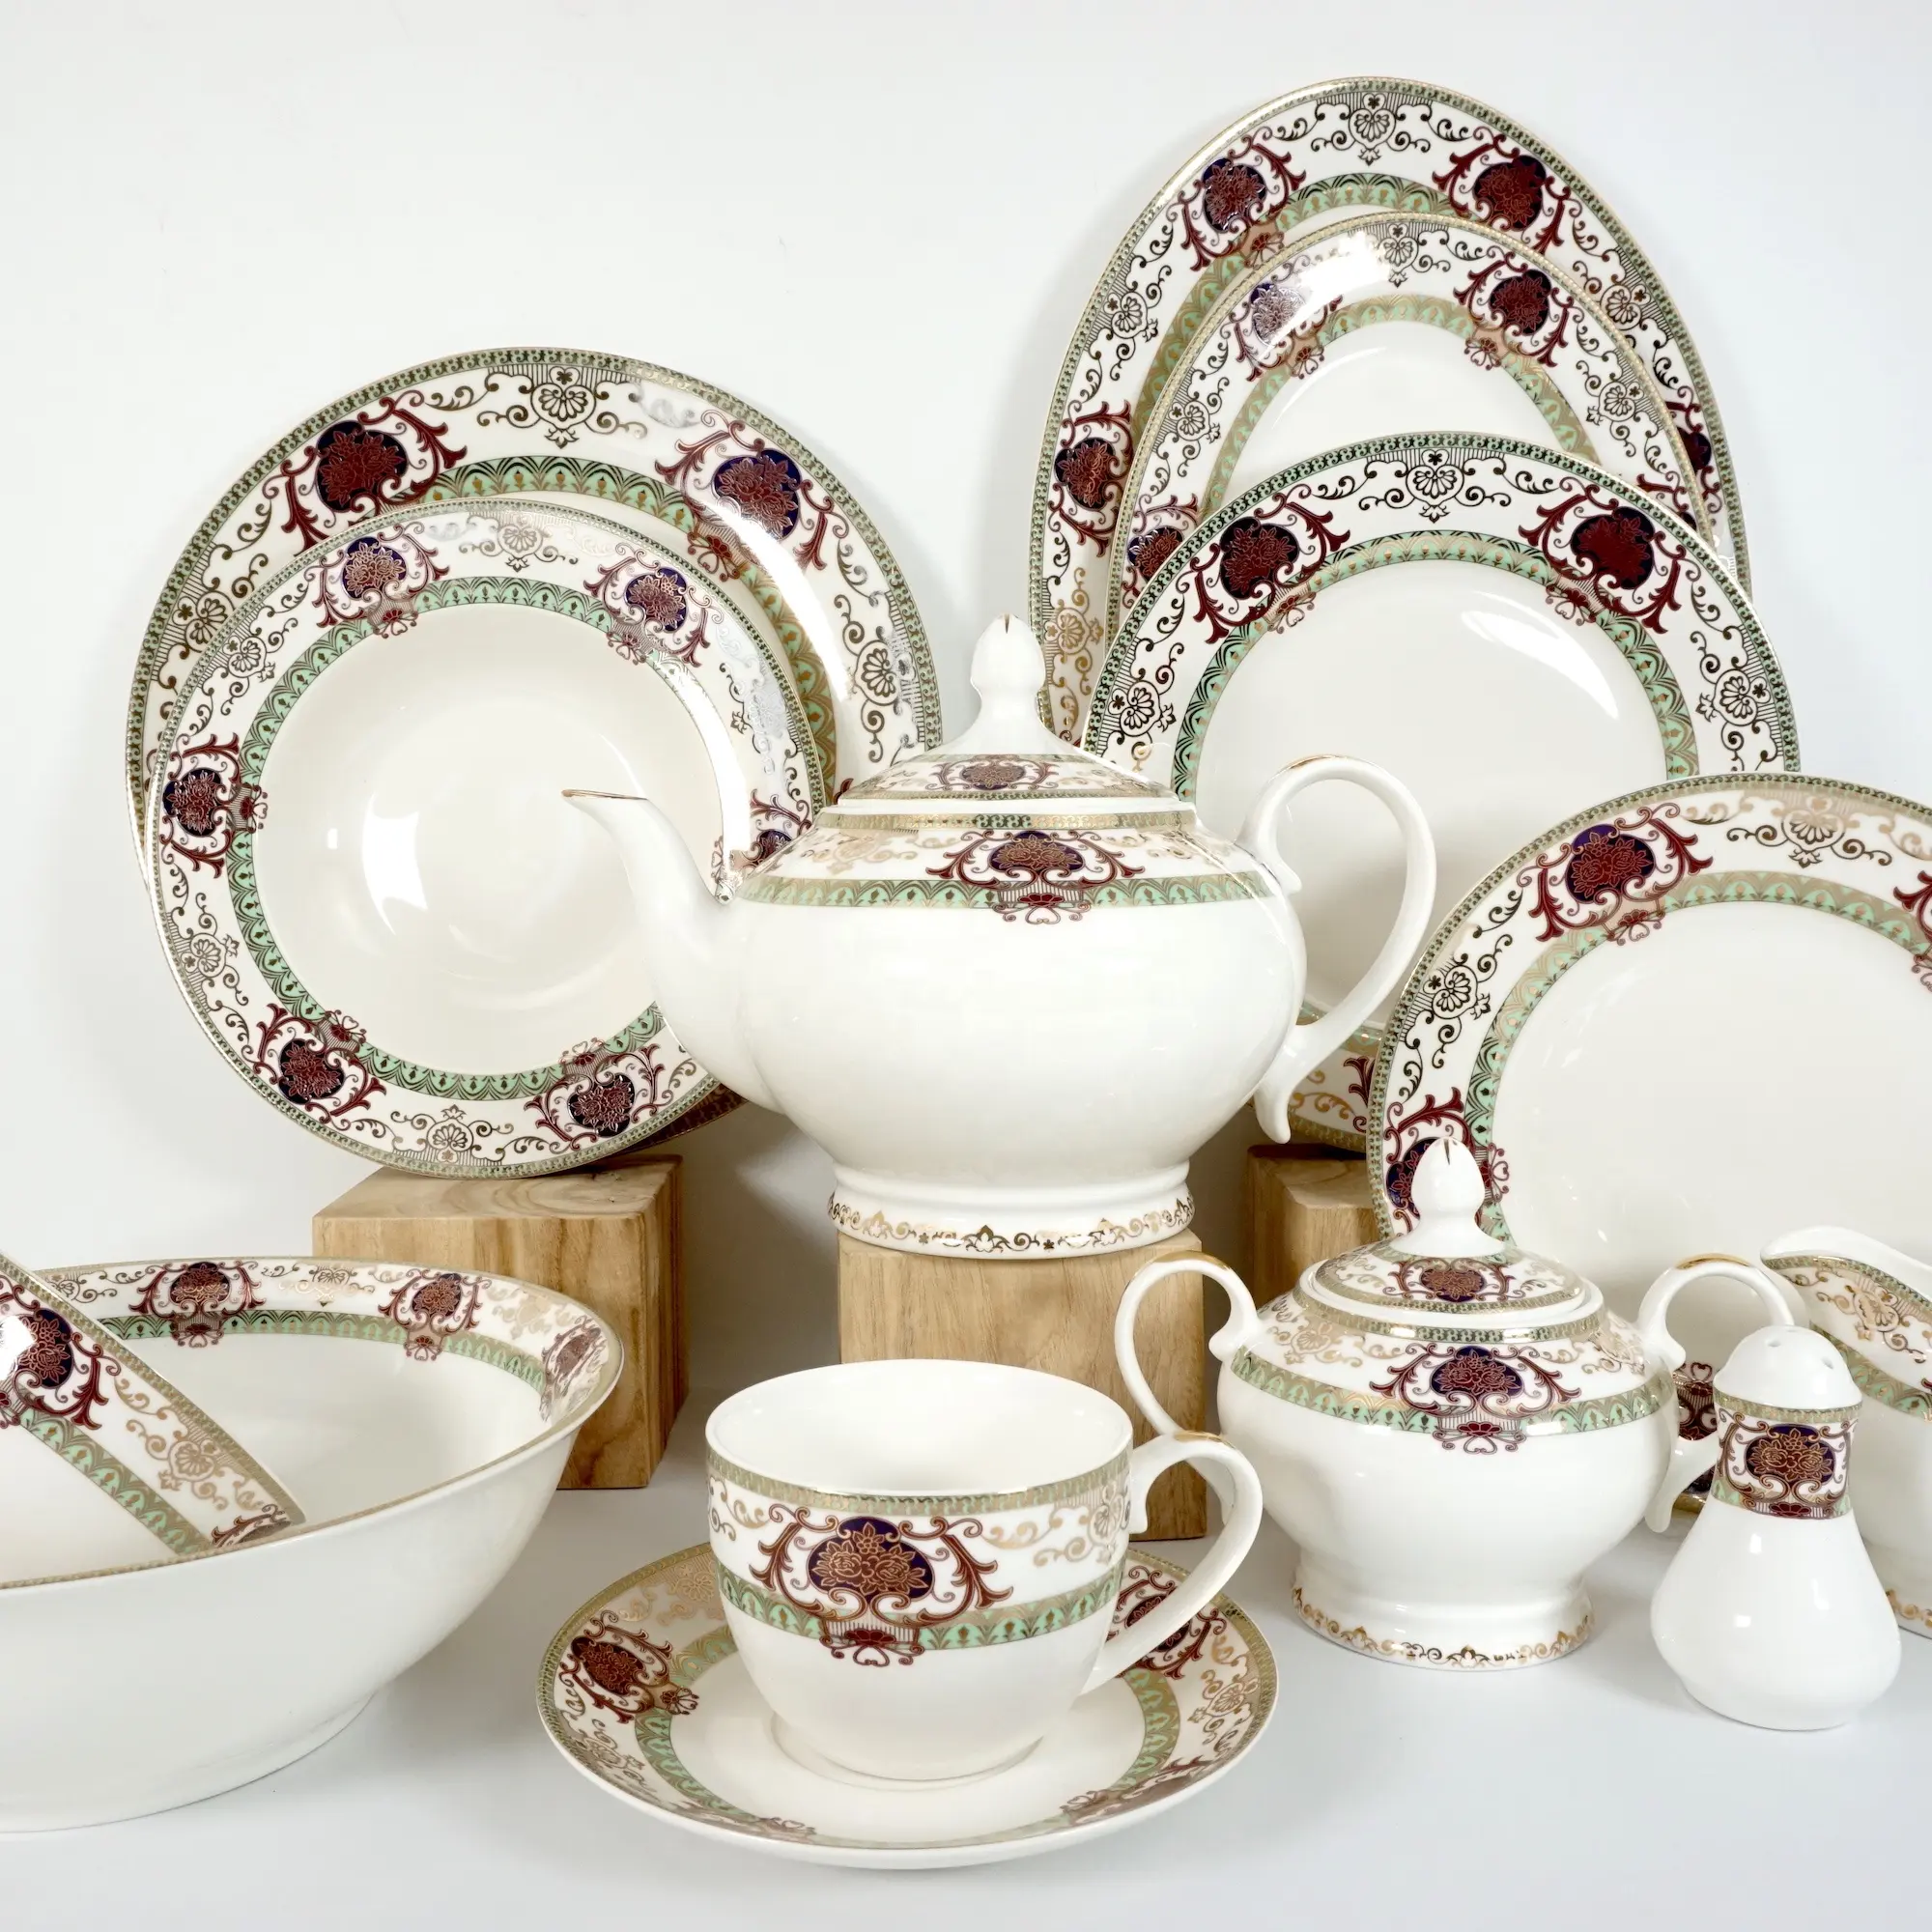 Blume Vintage Golden Rim Porzellan Russisches Design Abendessen Luxus Fine China Teller Sets Geschirr Keramik